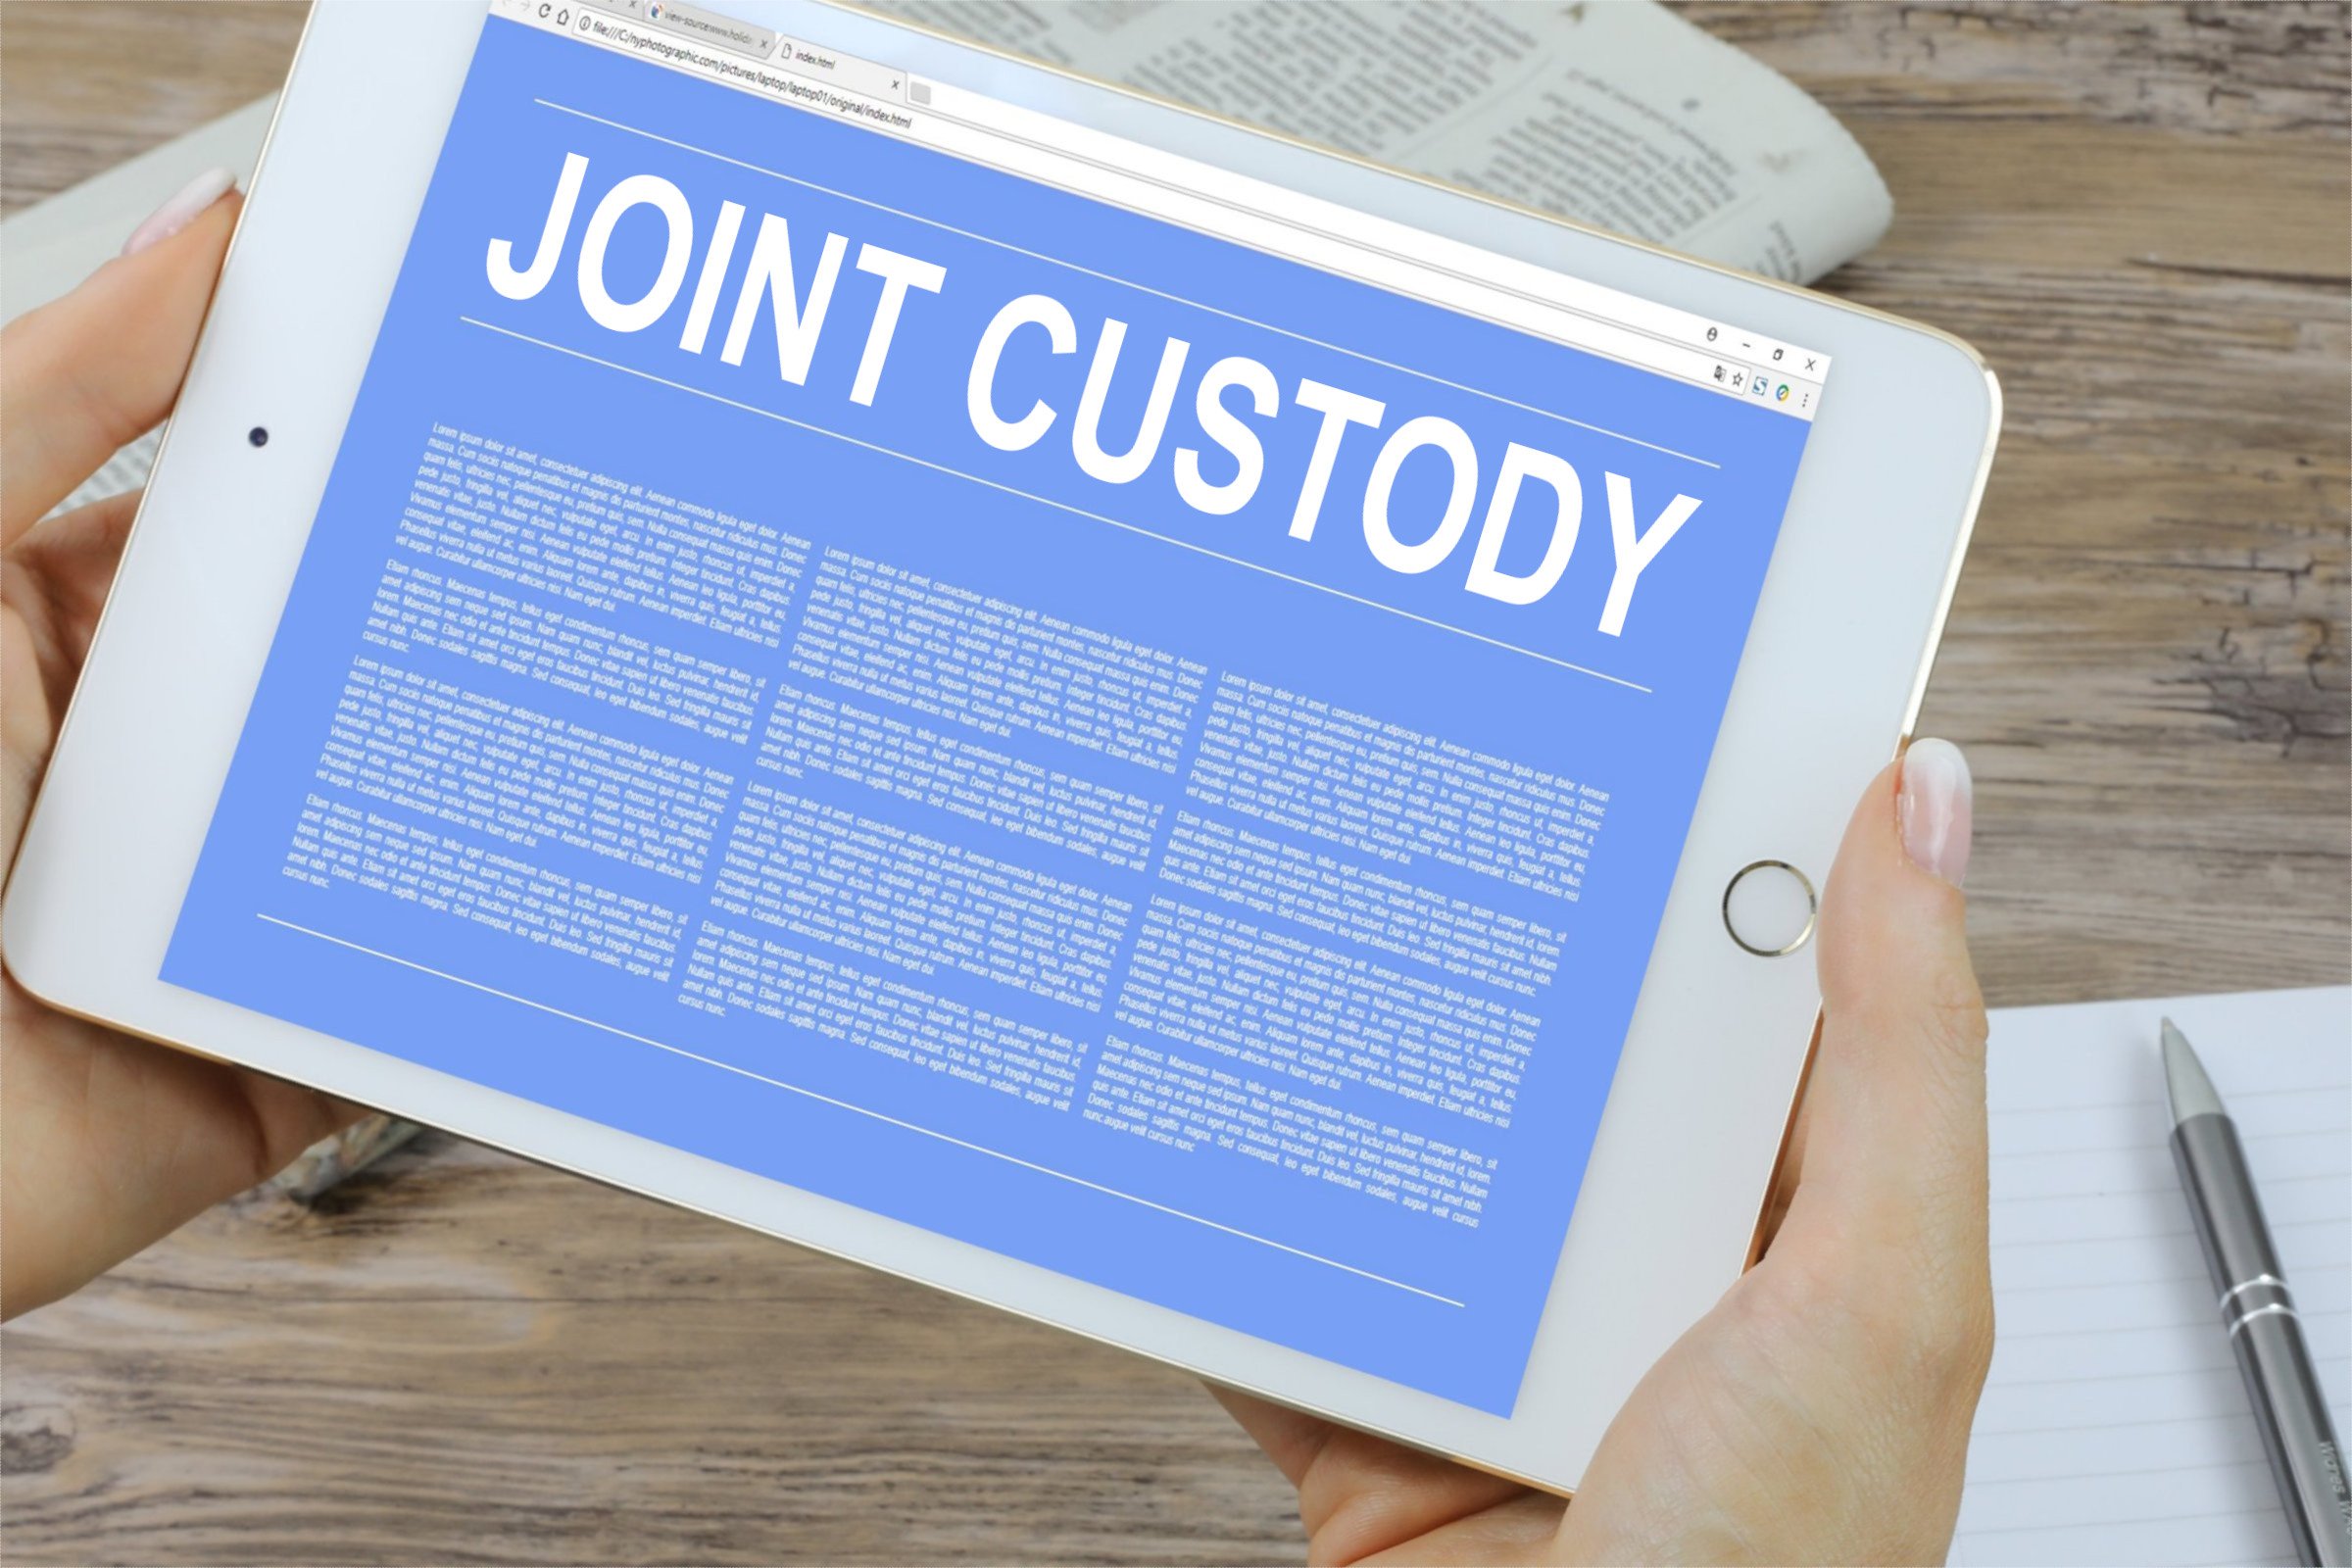 joint custody